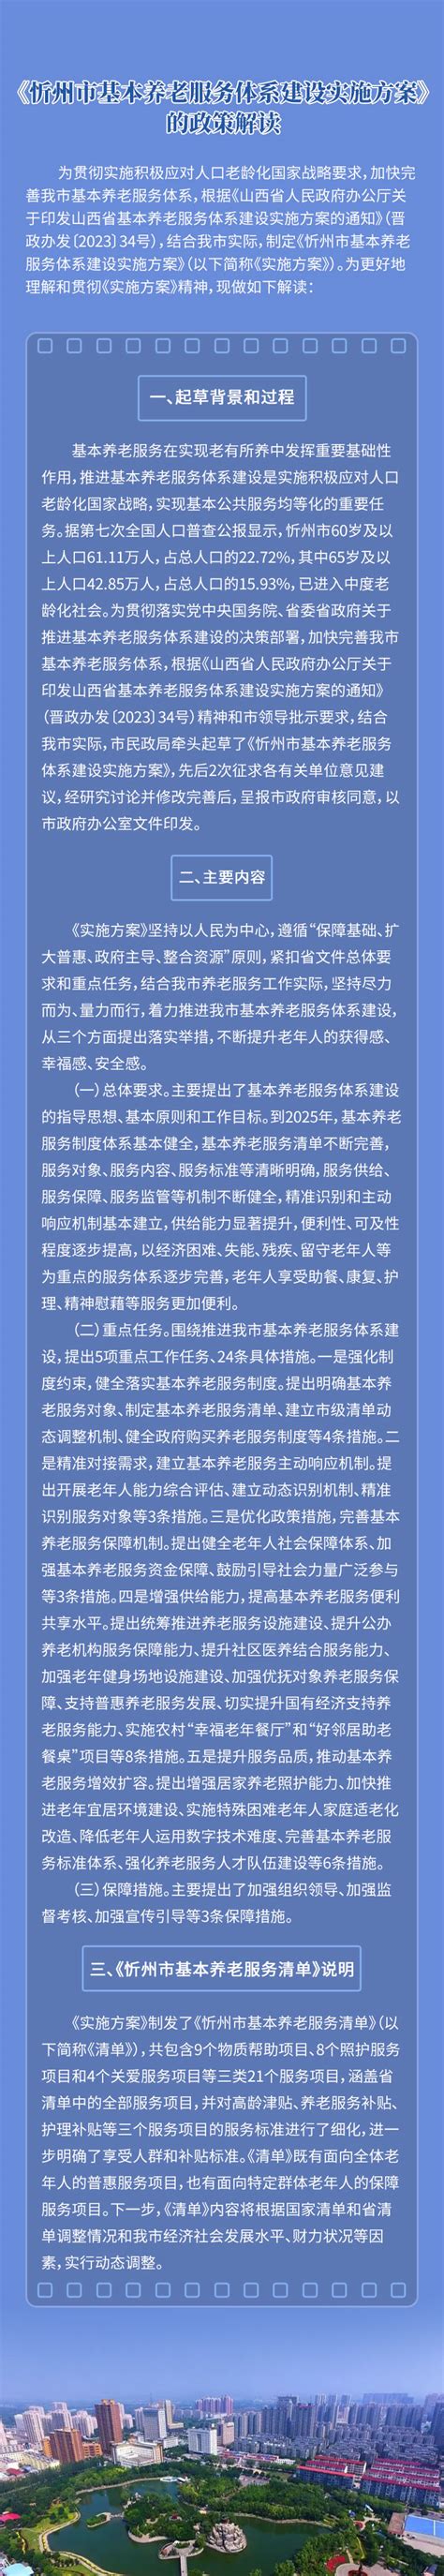 【图解】《忻州市基本养老服务体系建设实施方案》的政策解读-山西忻州